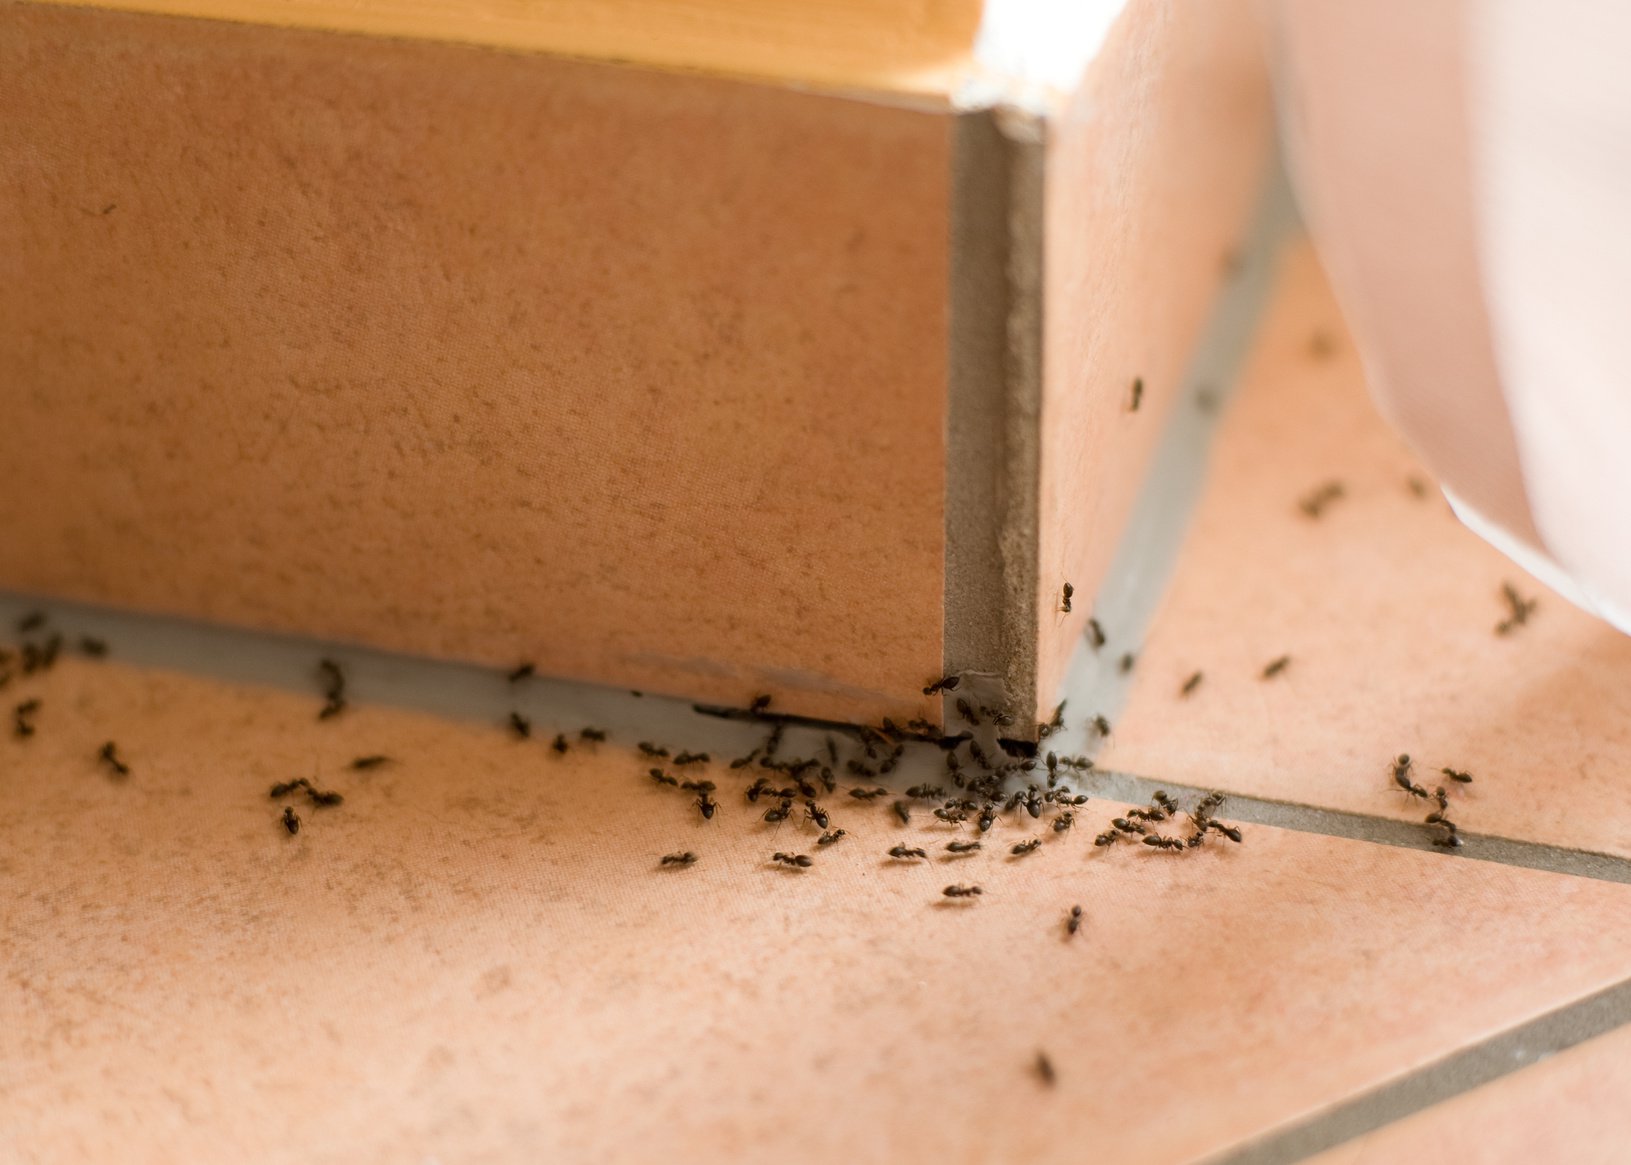 Πώς μπορείτε να απαλλαγείτε από τα μυρμήγκια άμεσα;